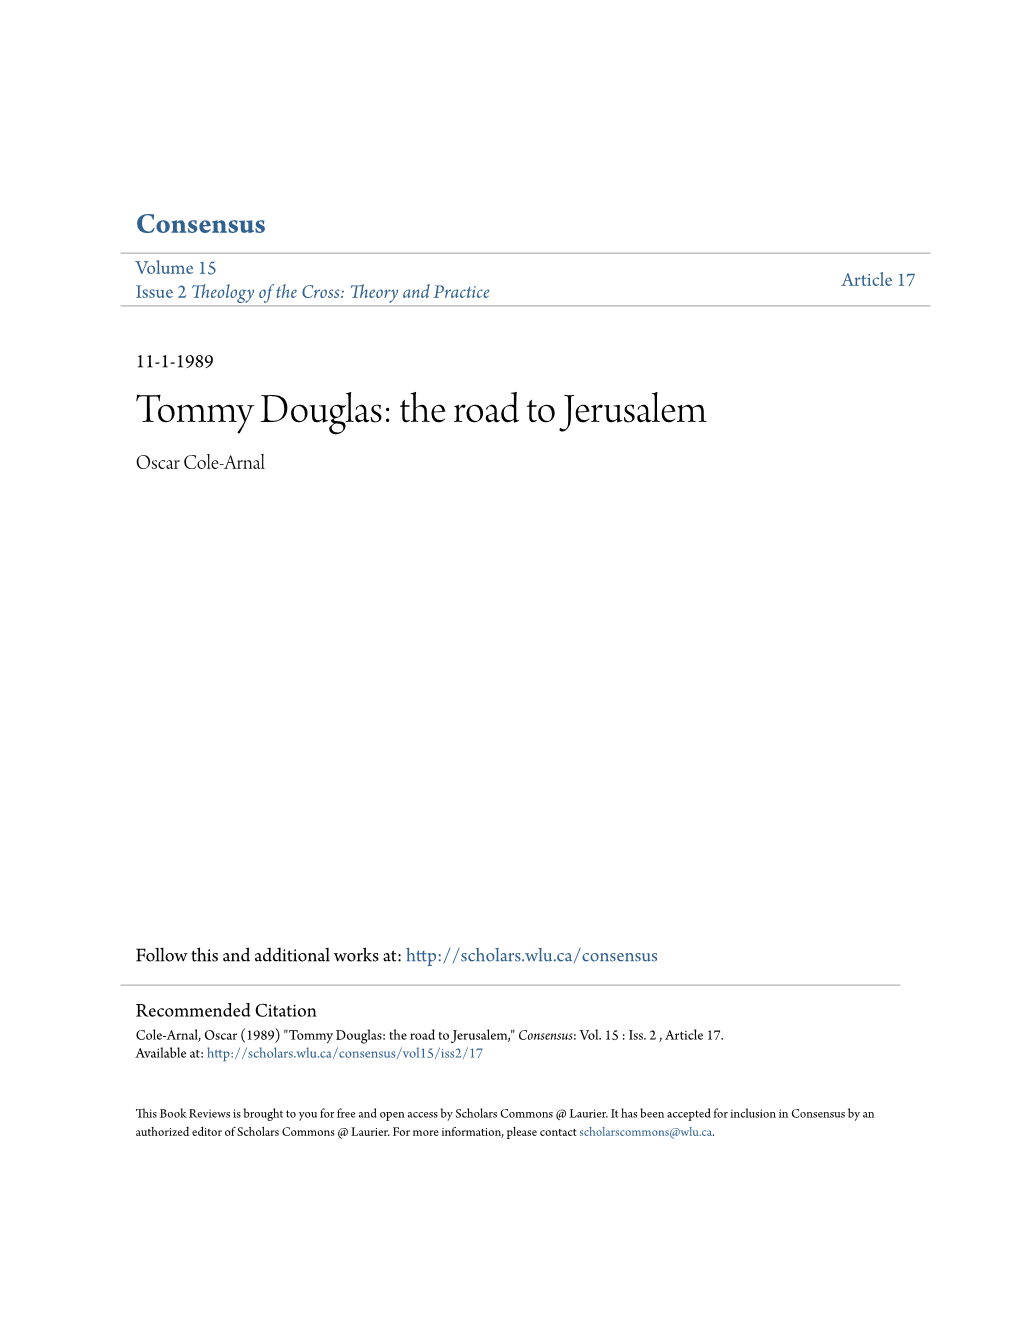 Tommy Douglas: the Road to Jerusalem Oscar Cole-Arnal